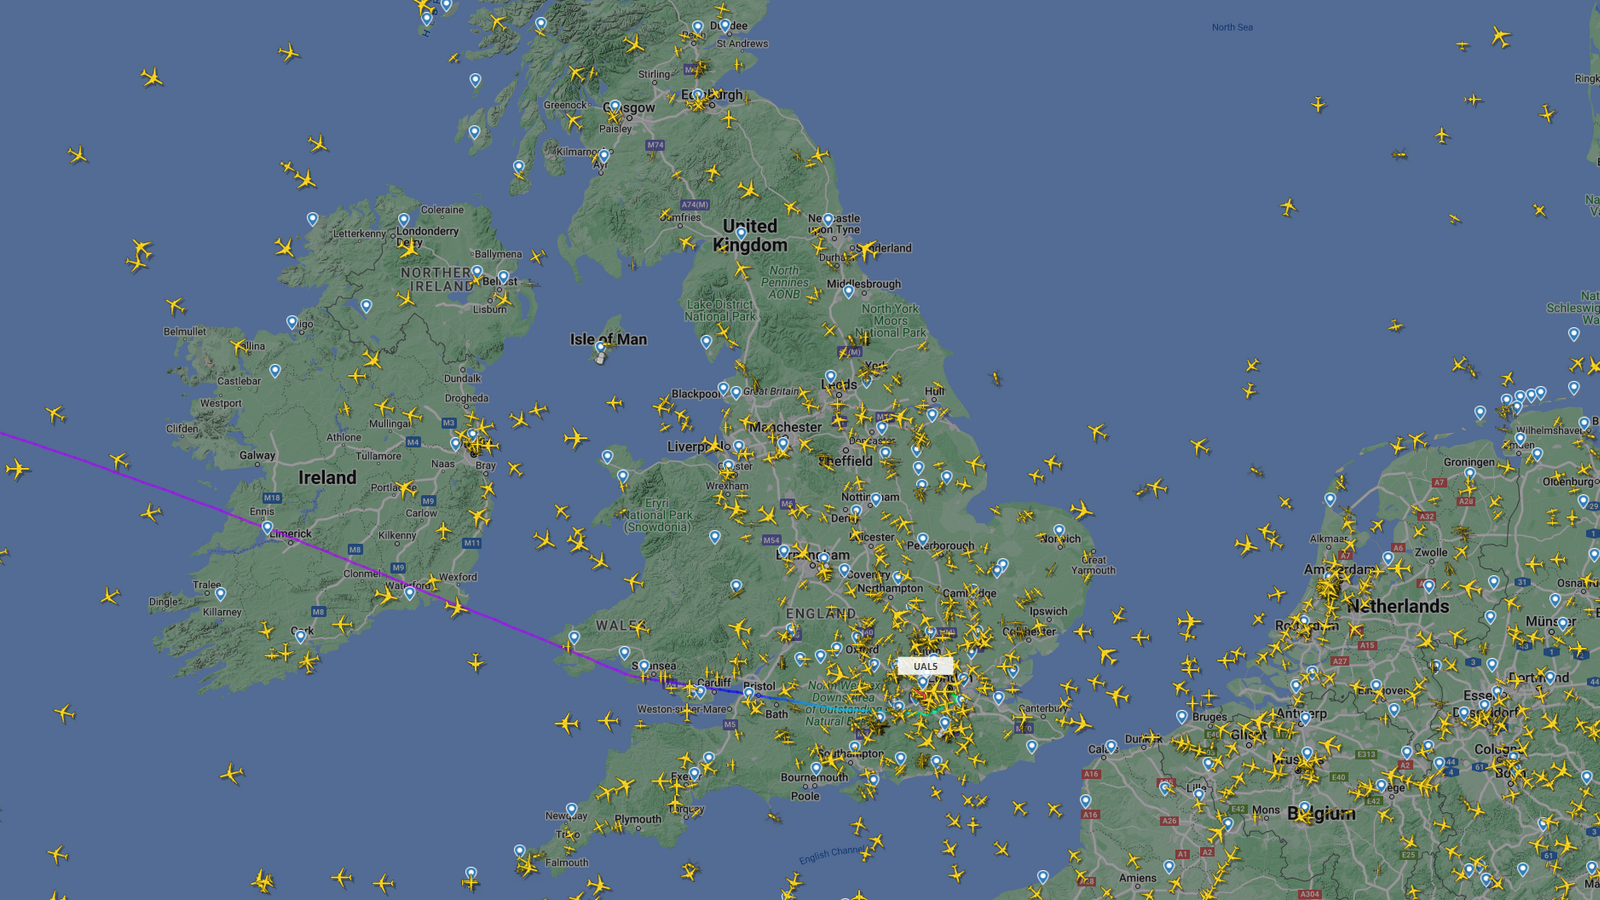 صورة بيانية من موقع Flightradar24 تشير إلى تأخير بعض الرحلات الجوية